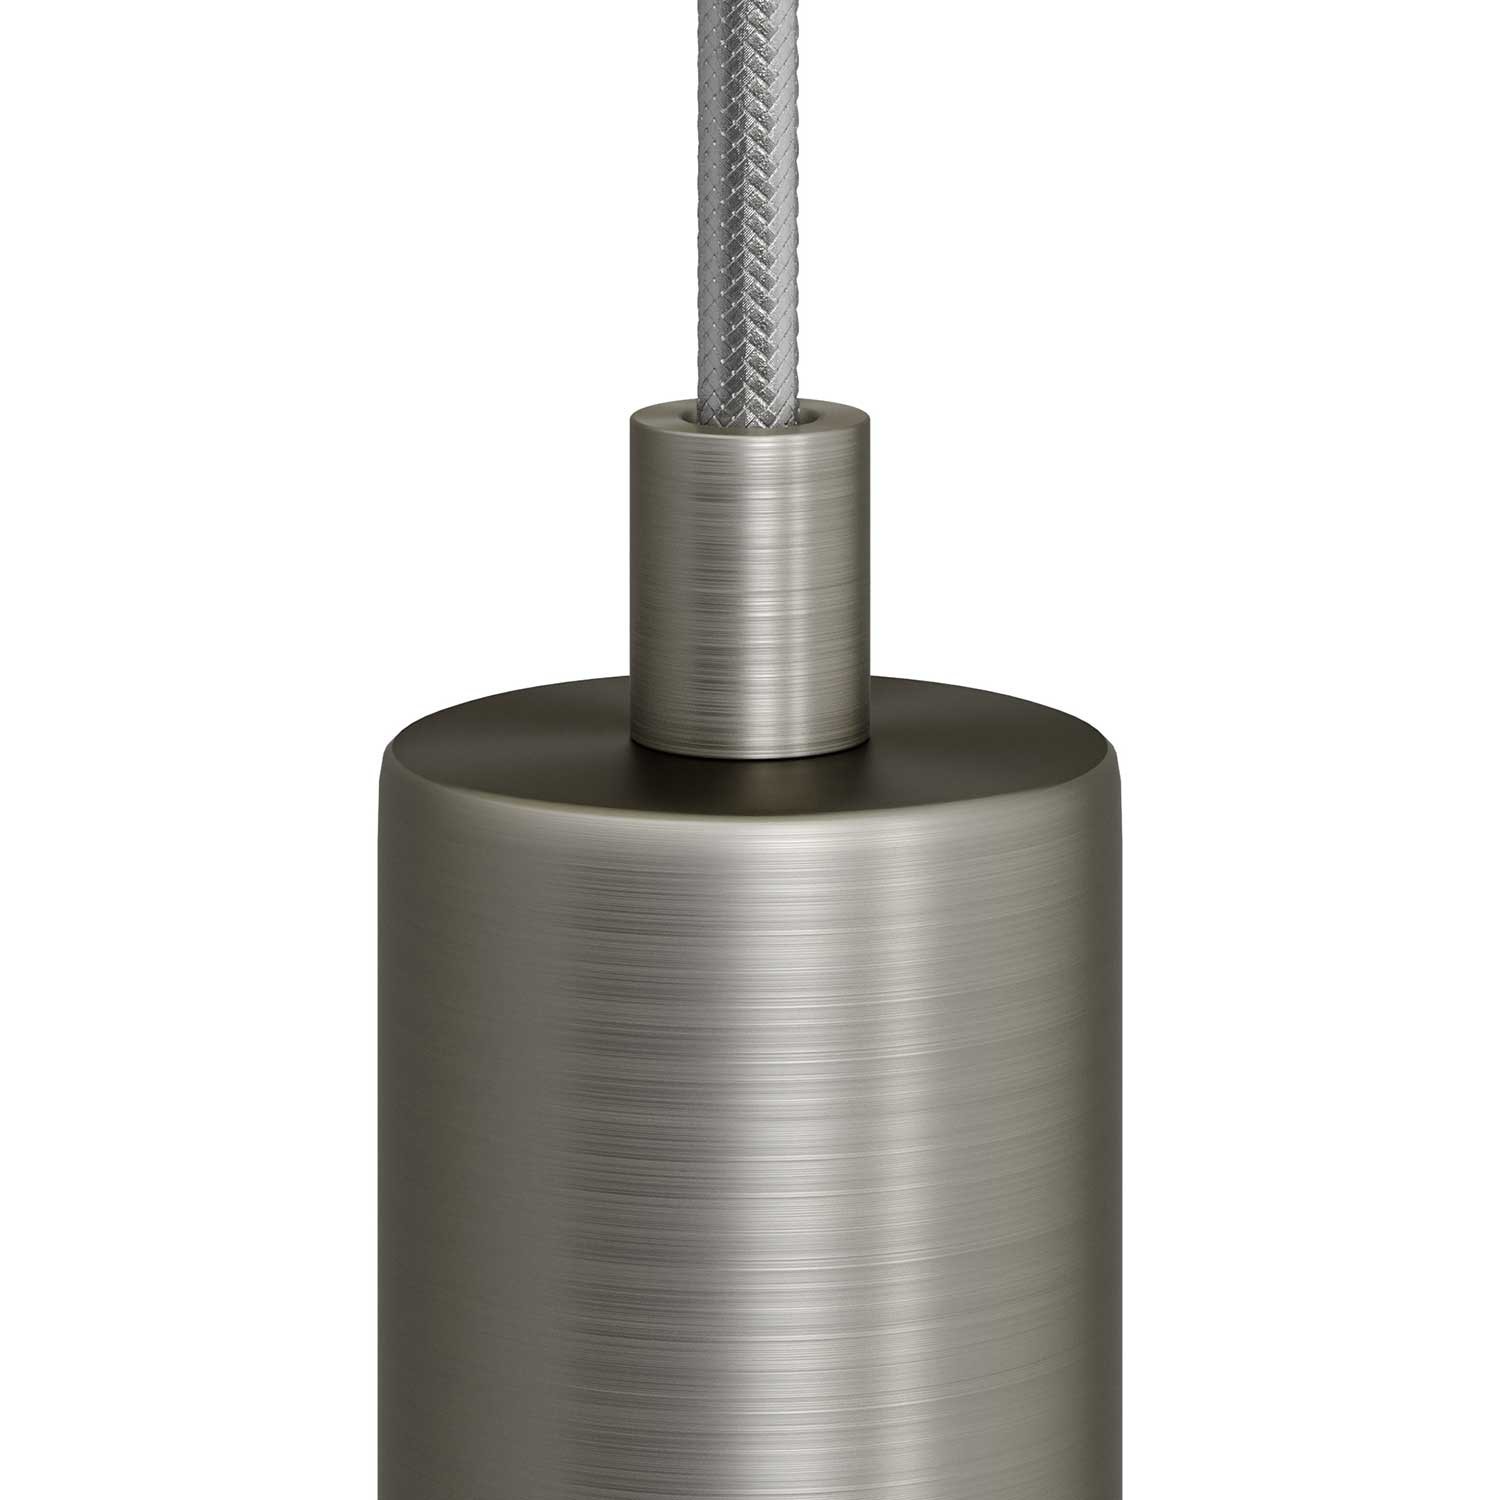 Cylindrisk dragavlastare i metall komplett med gängstång, mutter samt låsbricka - 2 st.